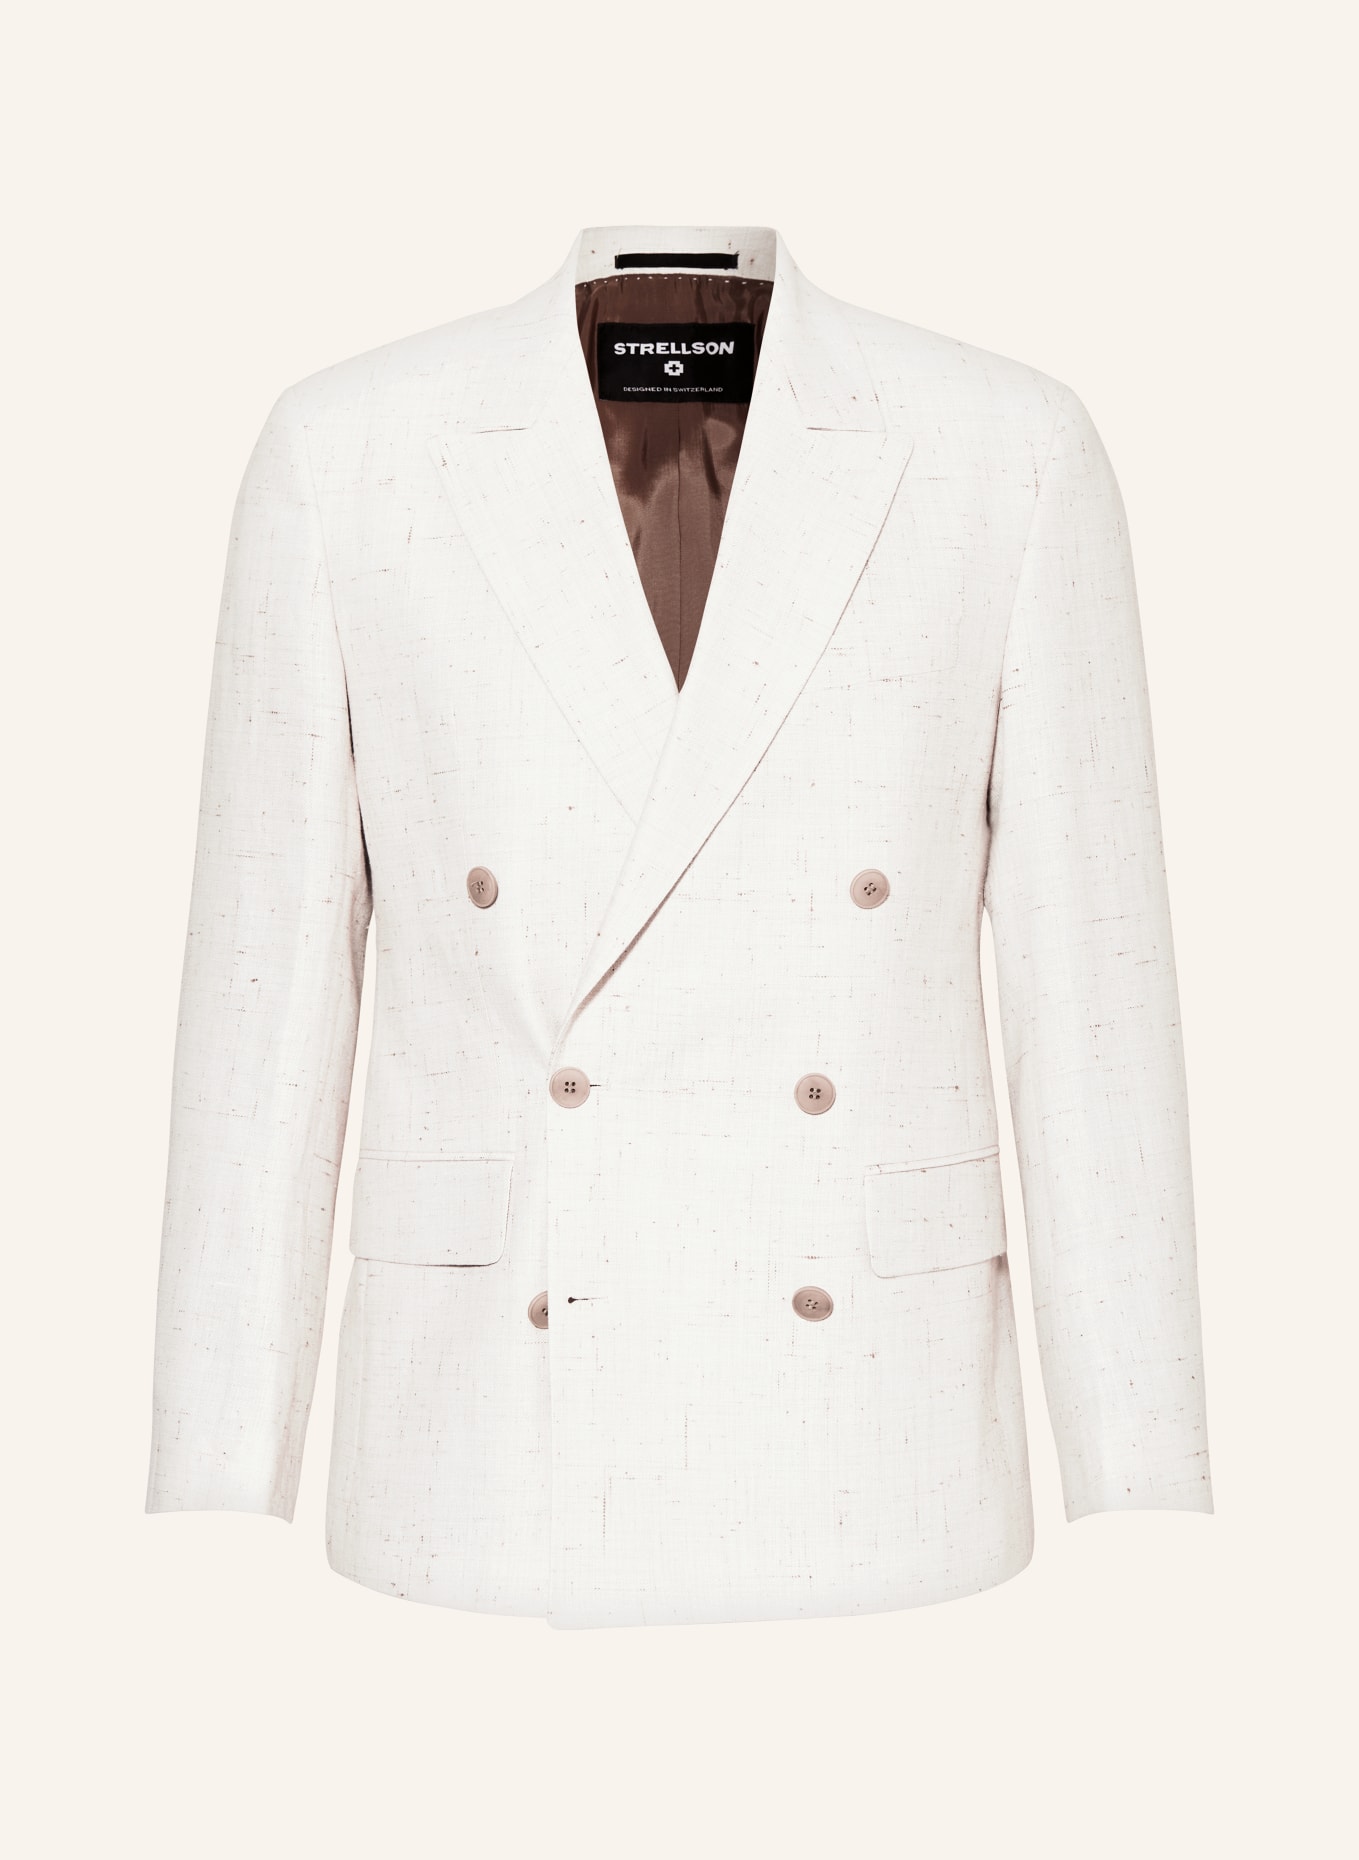 STRELLSON Suit jacket ASHTON slim fit with linen, Color: 115 Open White                 115 (Image 1)